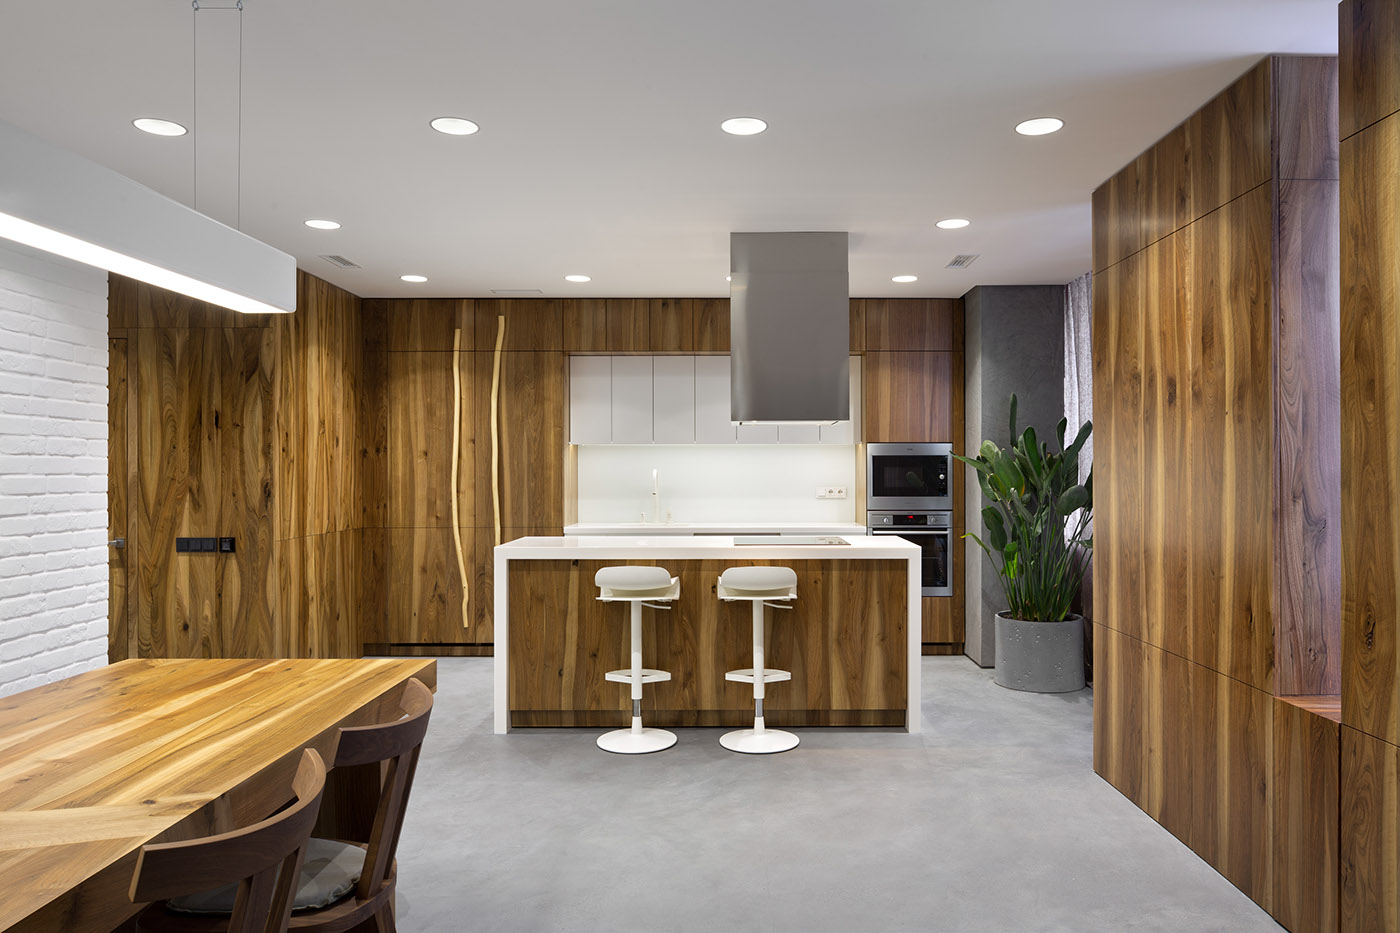 Interior furniture architecture product design wood